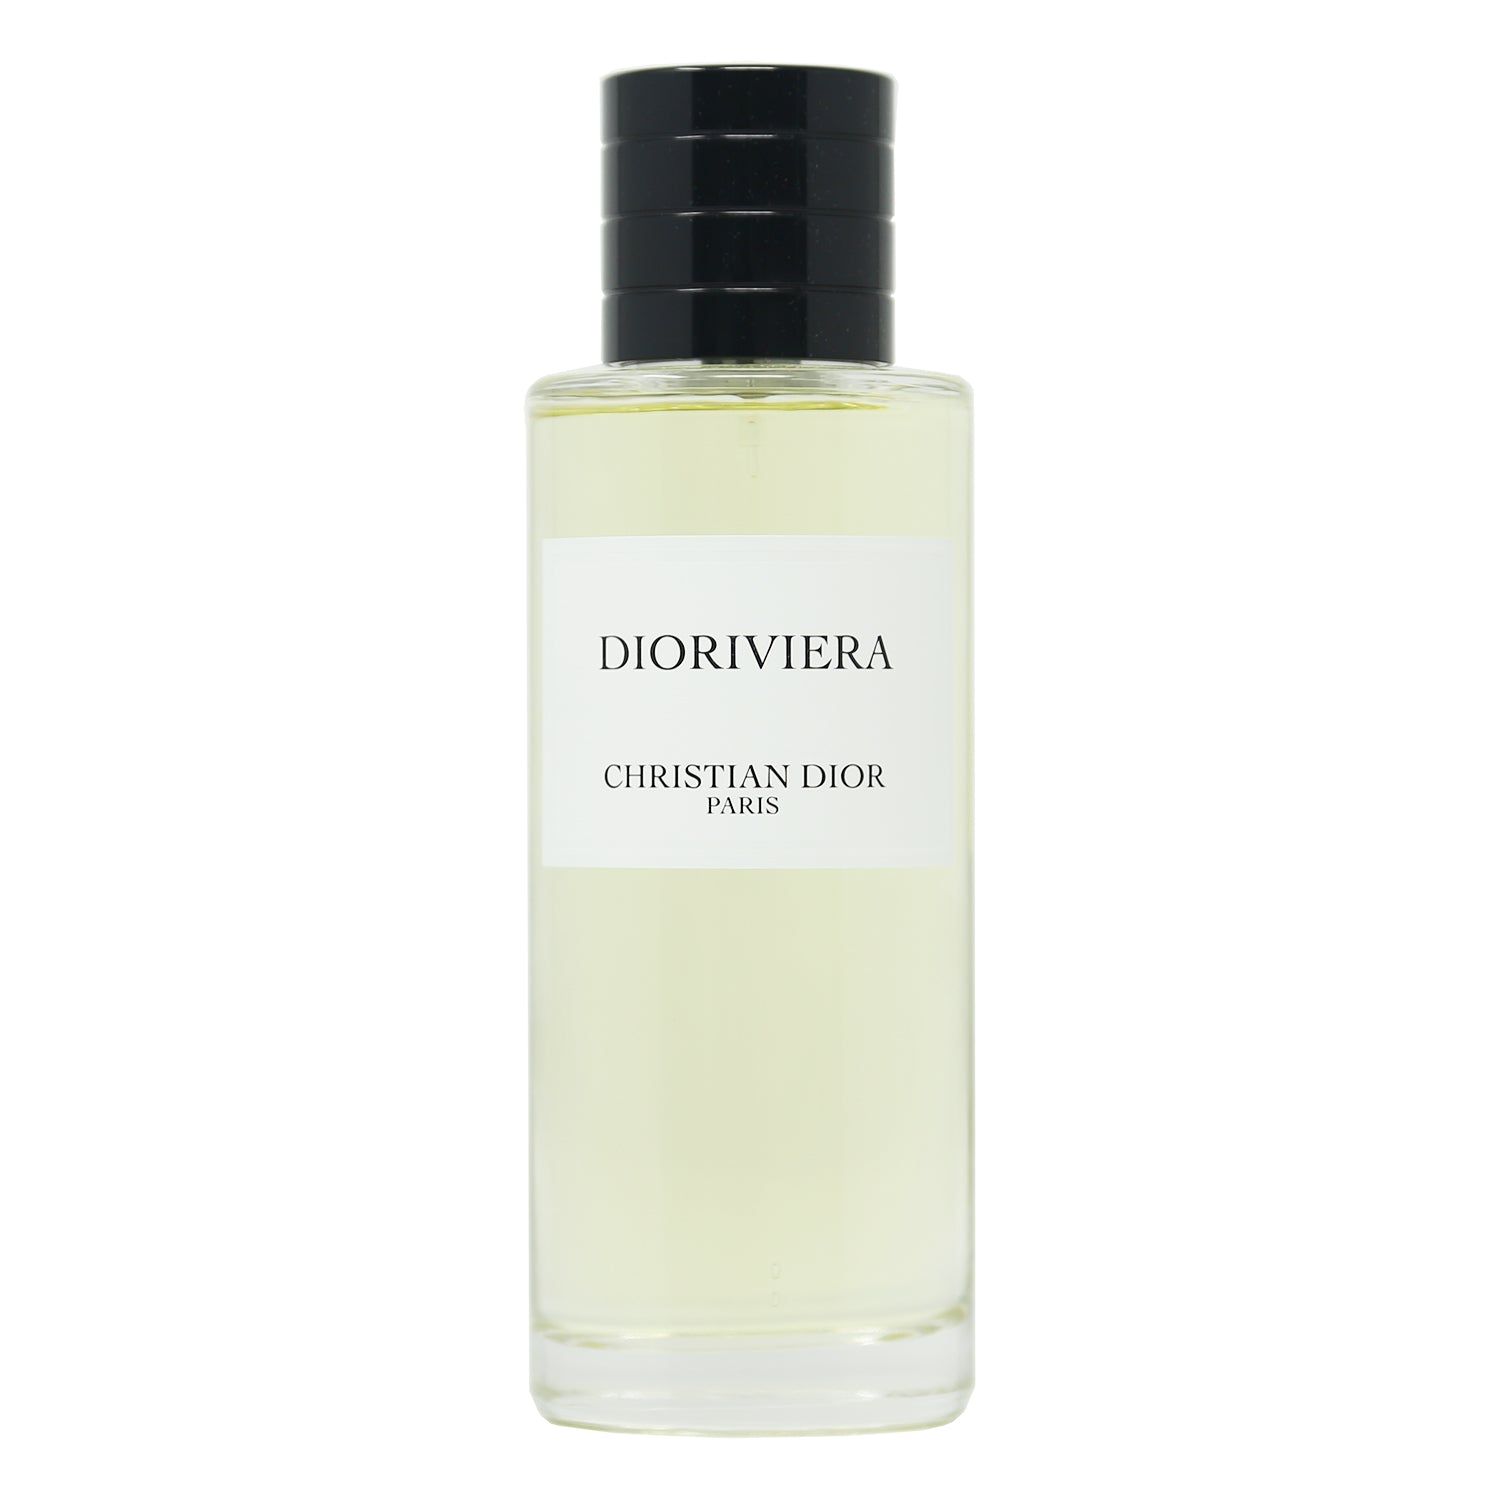 Dior Dioriviera: Francis Kurkdjian's First Dior Fragrance